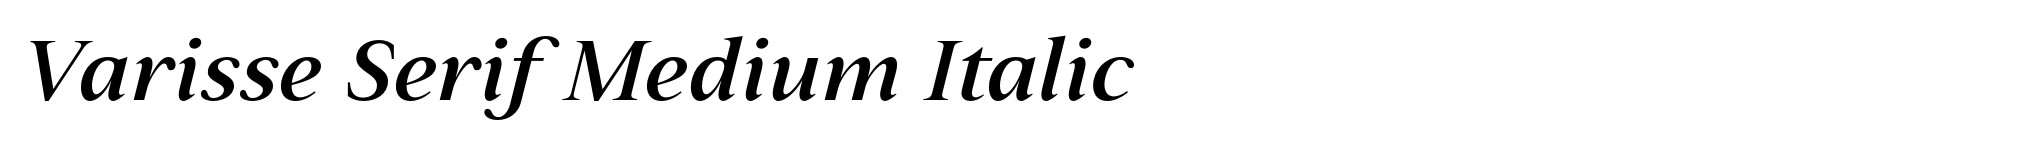 Varisse Serif Medium Italic image